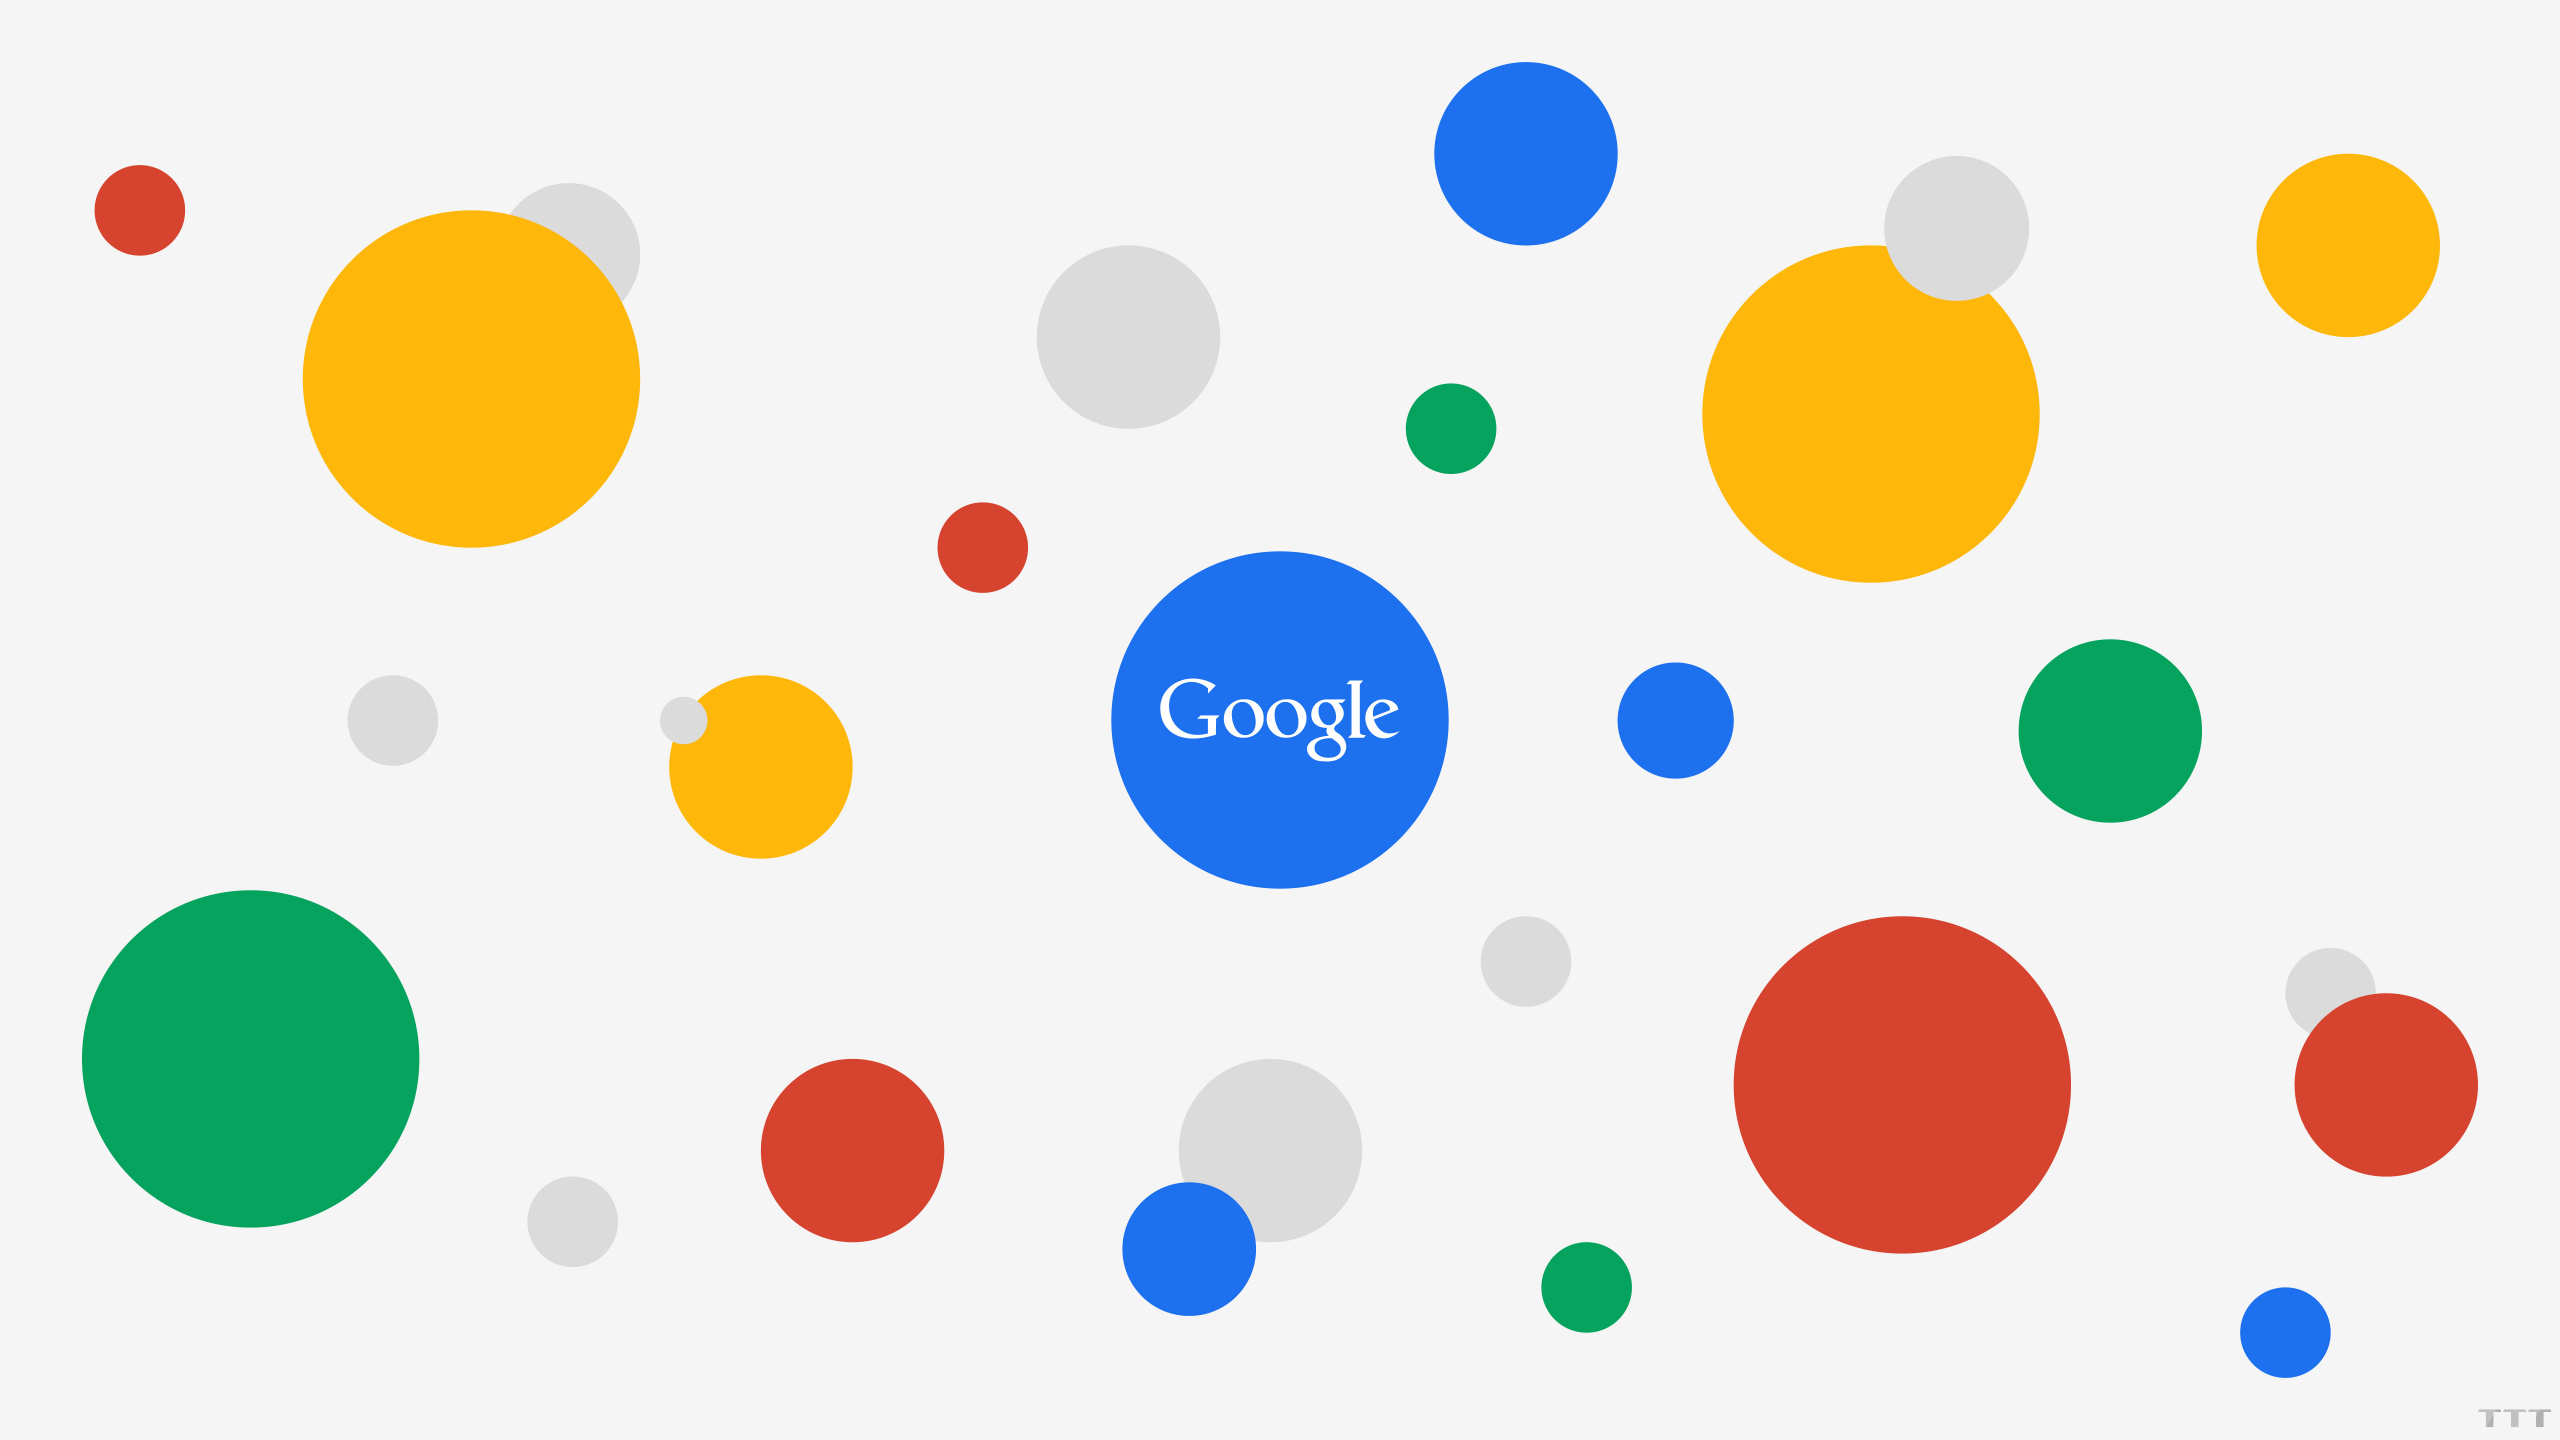 谷歌, 谷歌的广告, 互联网, 黄色的, 圆圈 壁纸 2560x1440 允许